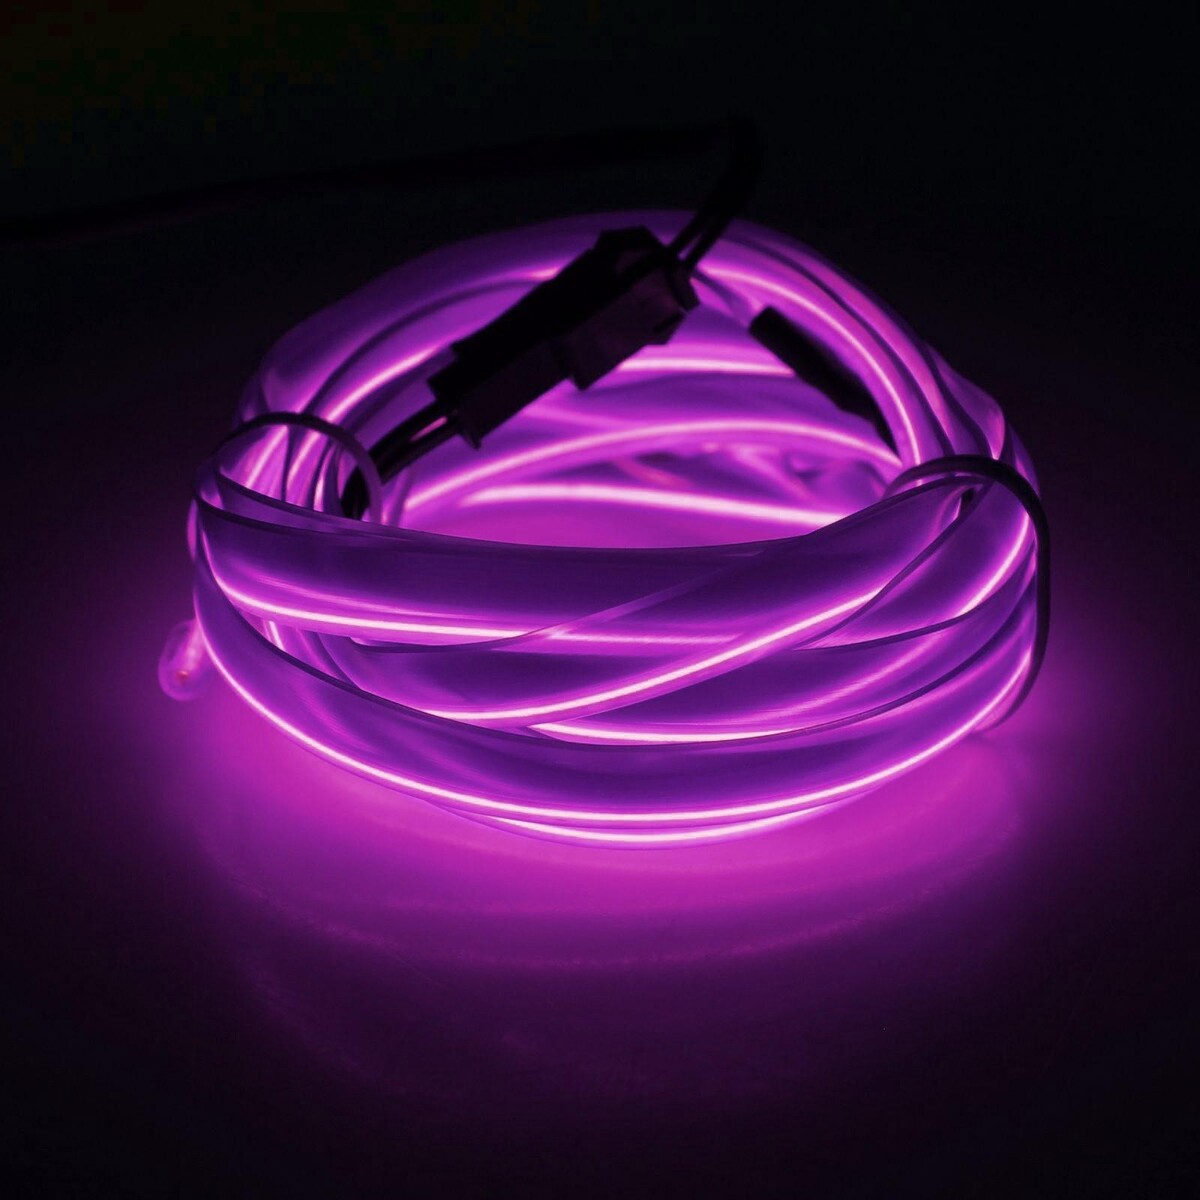 Неоновая нить cartage для подсветки салона, адаптер питания 12 в, 2 м, фиолетовый мини вентилятор в форме наручных часов lof 09 3 скорости подсветка фиолетовый